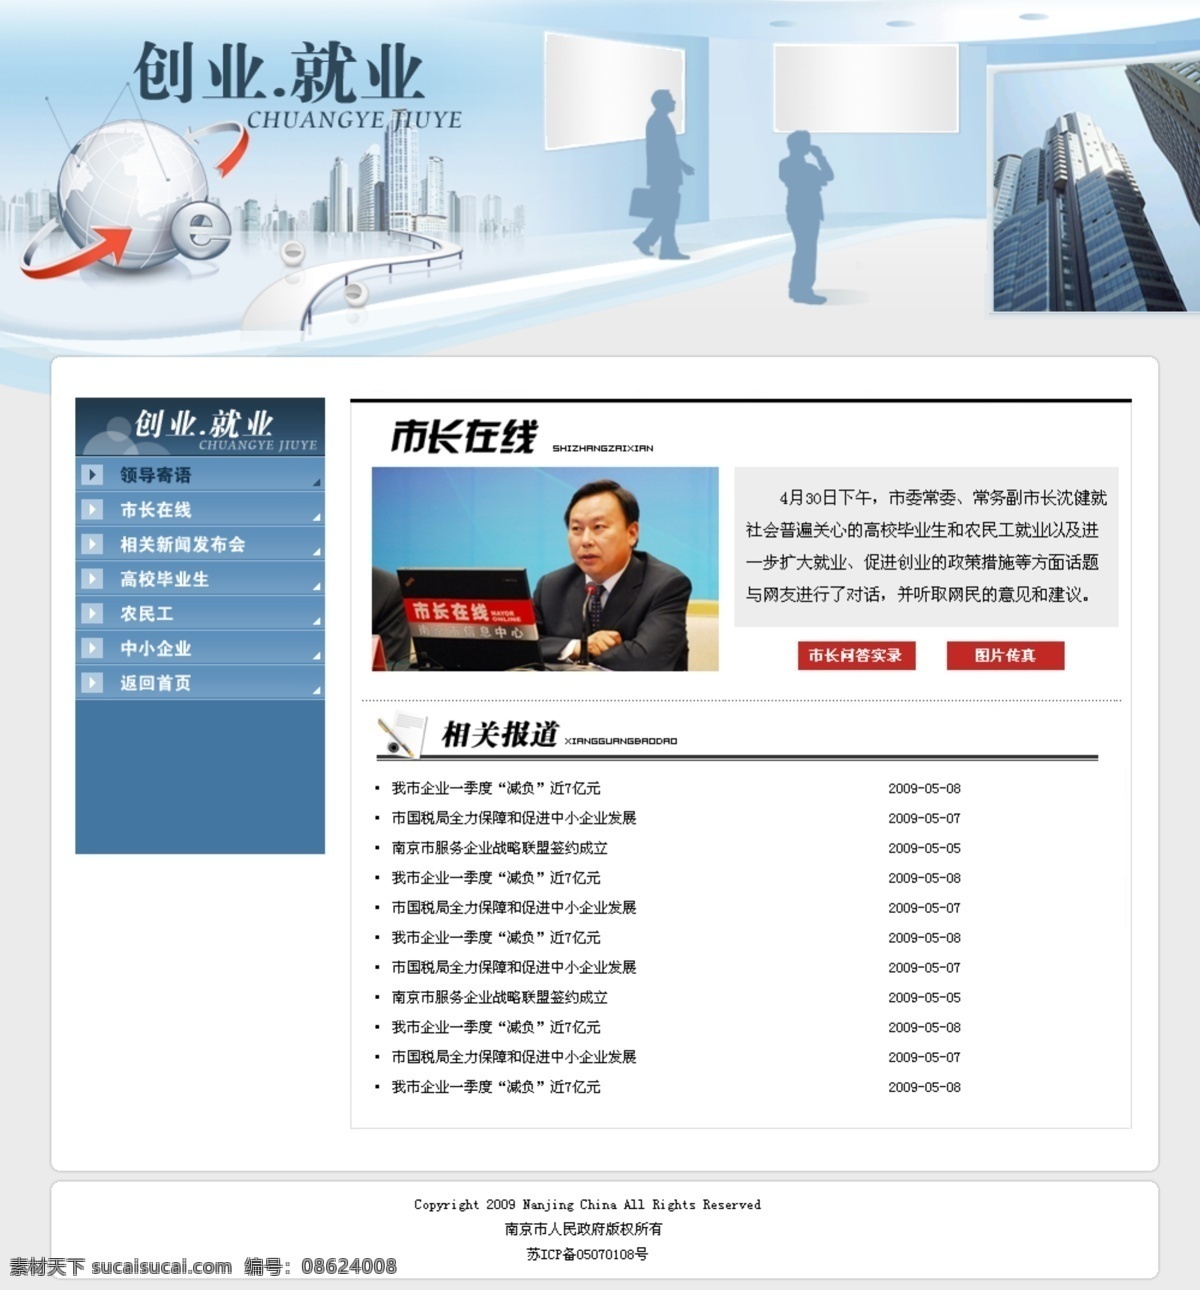 和谐社会 网页模板 网页设计 源文件 中文模版 创业 就业 专题 模板下载 创业就业 市政府 文明中国 网页素材